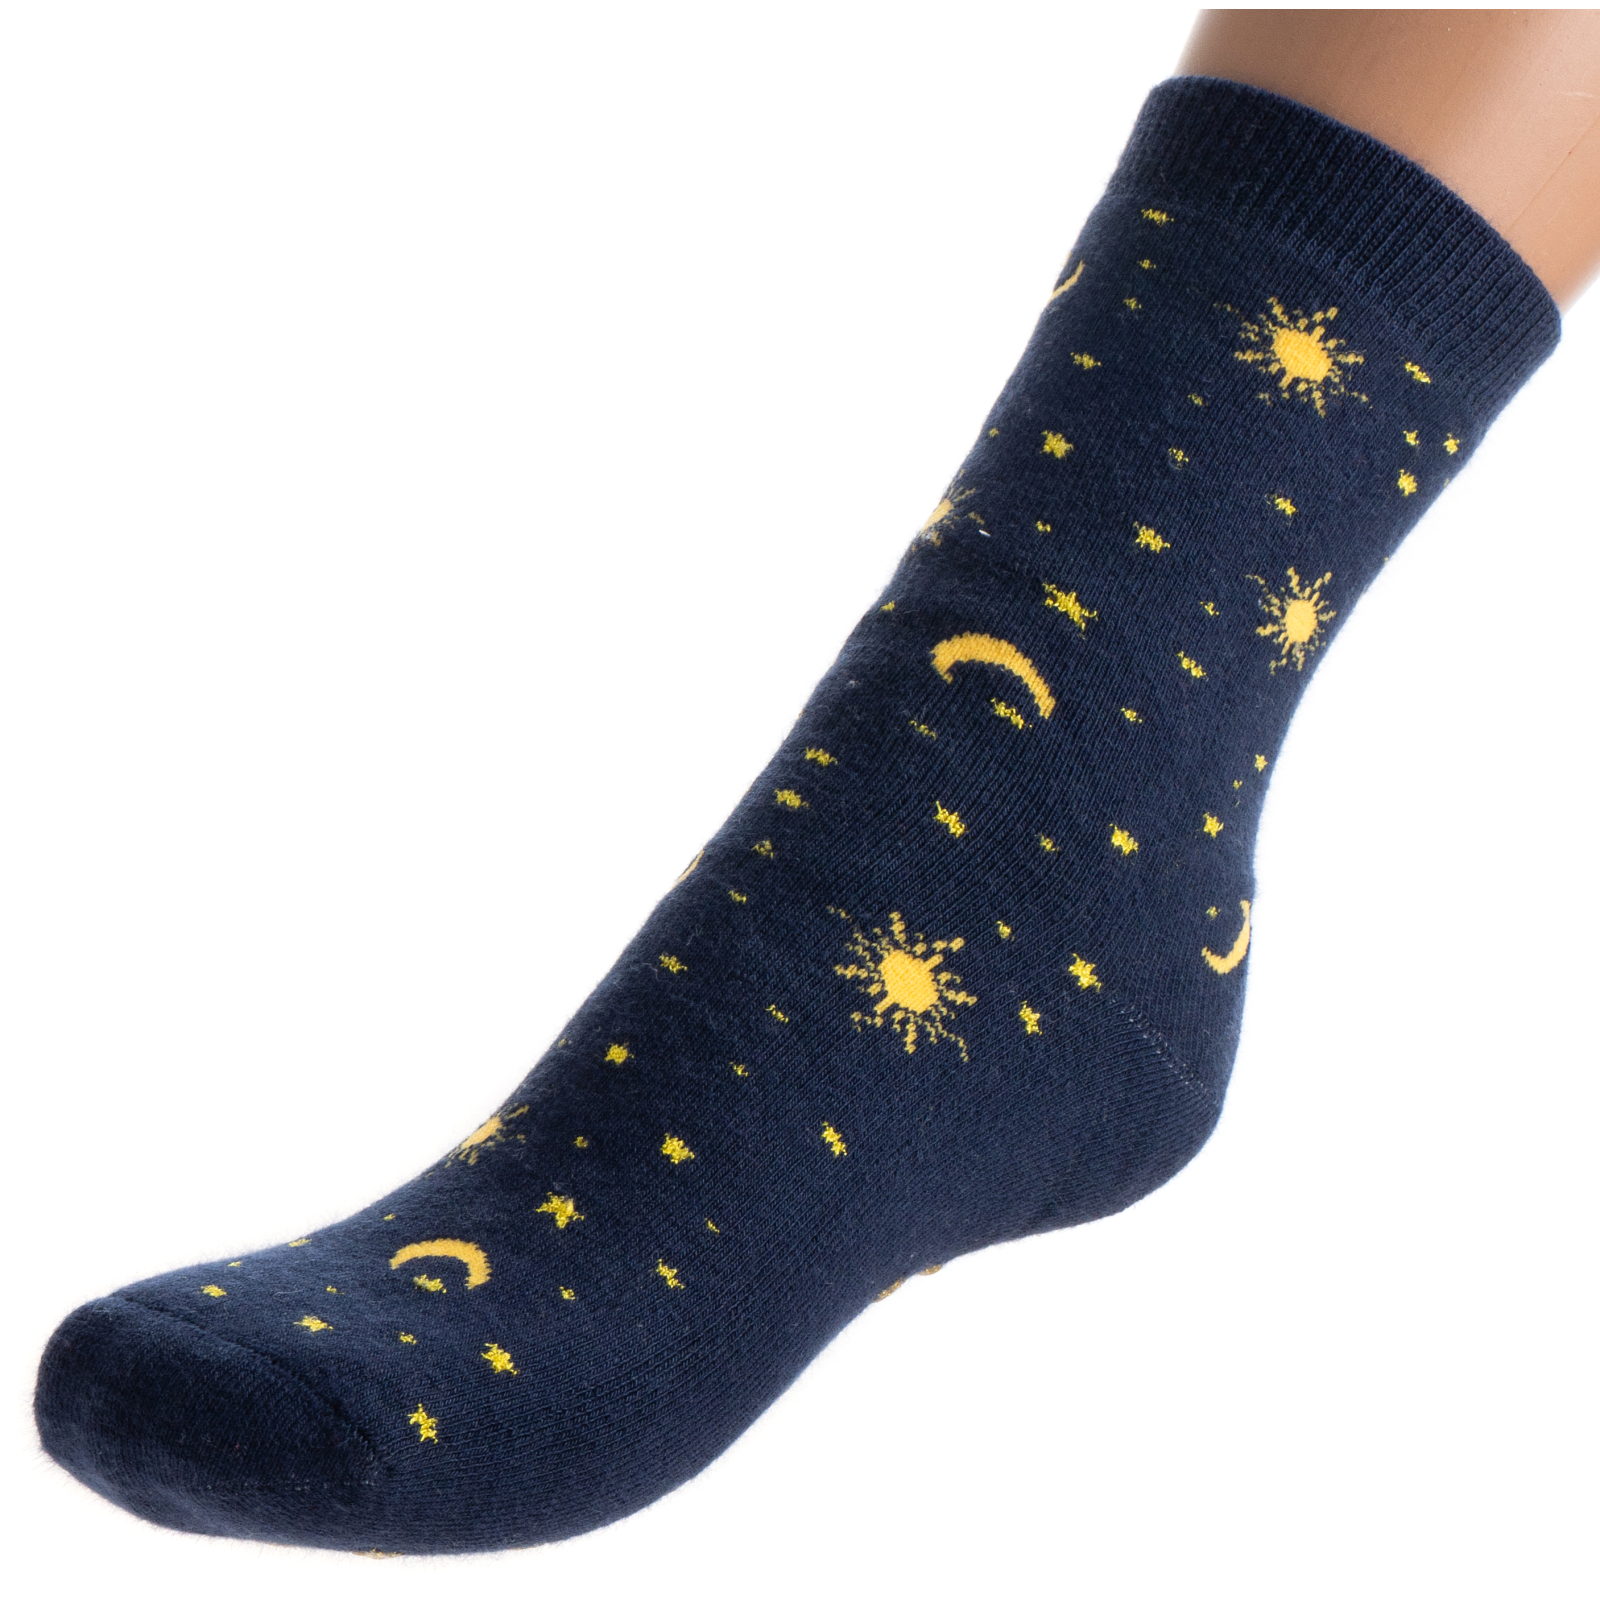 Носки детские Bross махровые со звездочками (10196-6-blue)